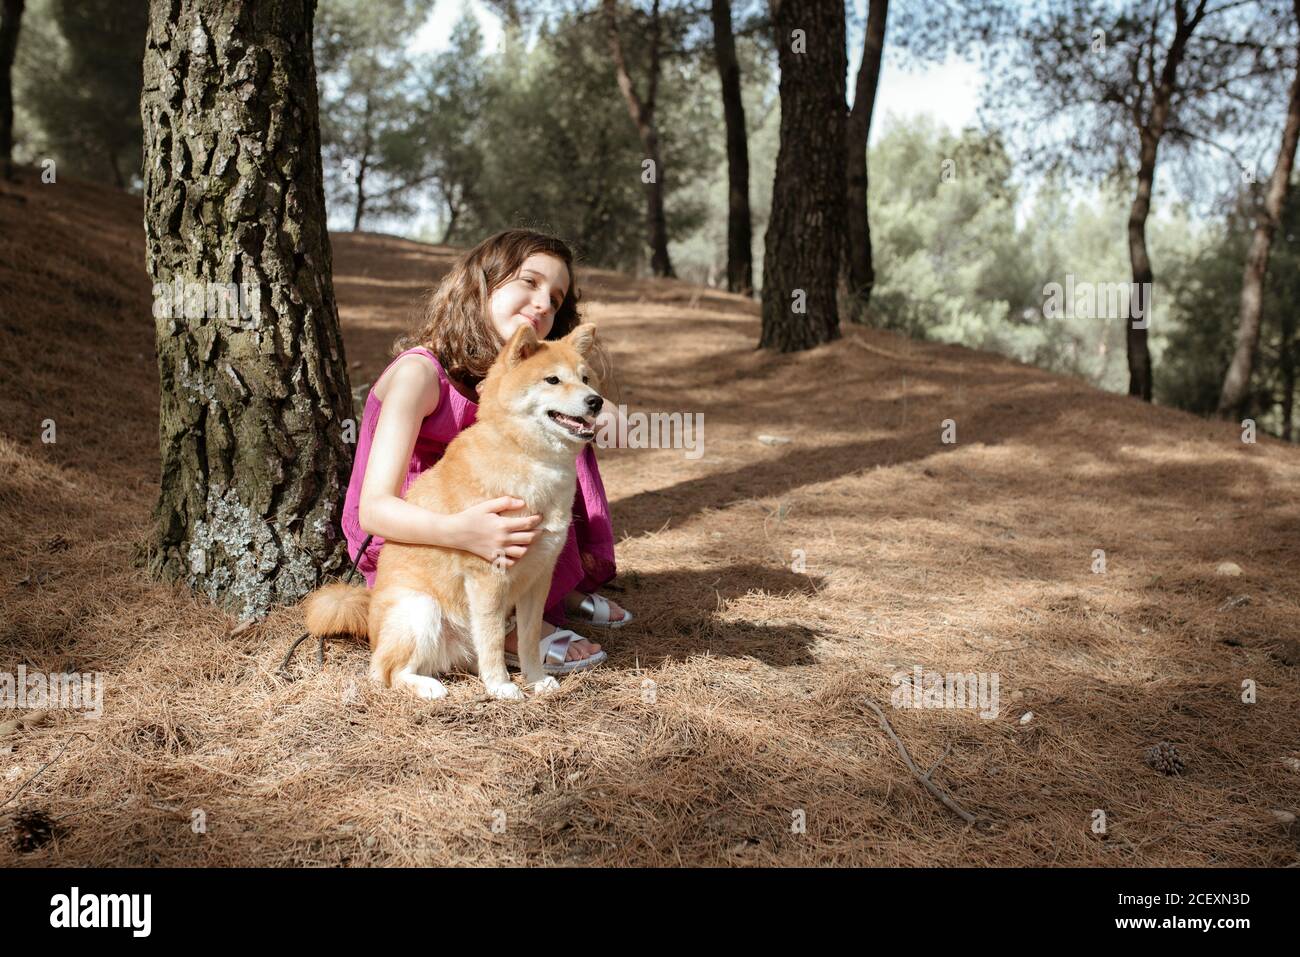 Volle Länge der positiven ruhigen kleinen Mädchen umarmt liebenswert Shiba Inu Hund beim Sitzen zusammen in der Nähe von Baumstamm im Sommer Wald Stockfoto